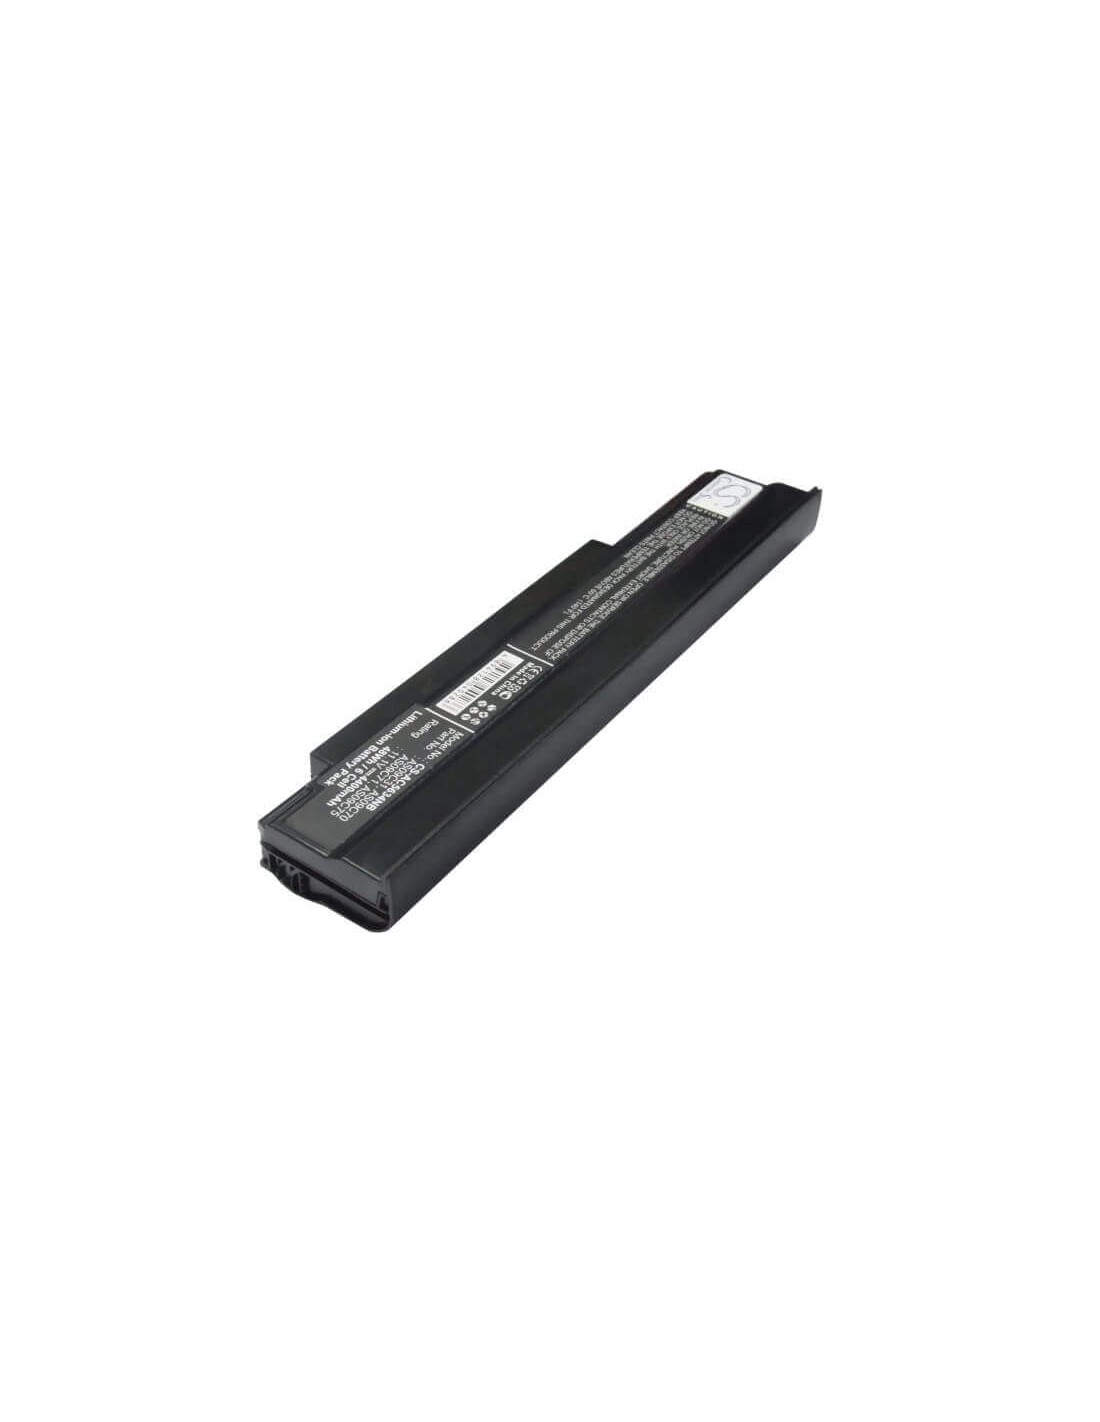 Black Battery for Acer Extensa 5635z, Extensa 5635z-422g16mn, Extensa 5635z-432g16mn 11.1V, 4400mAh - 48.84Wh